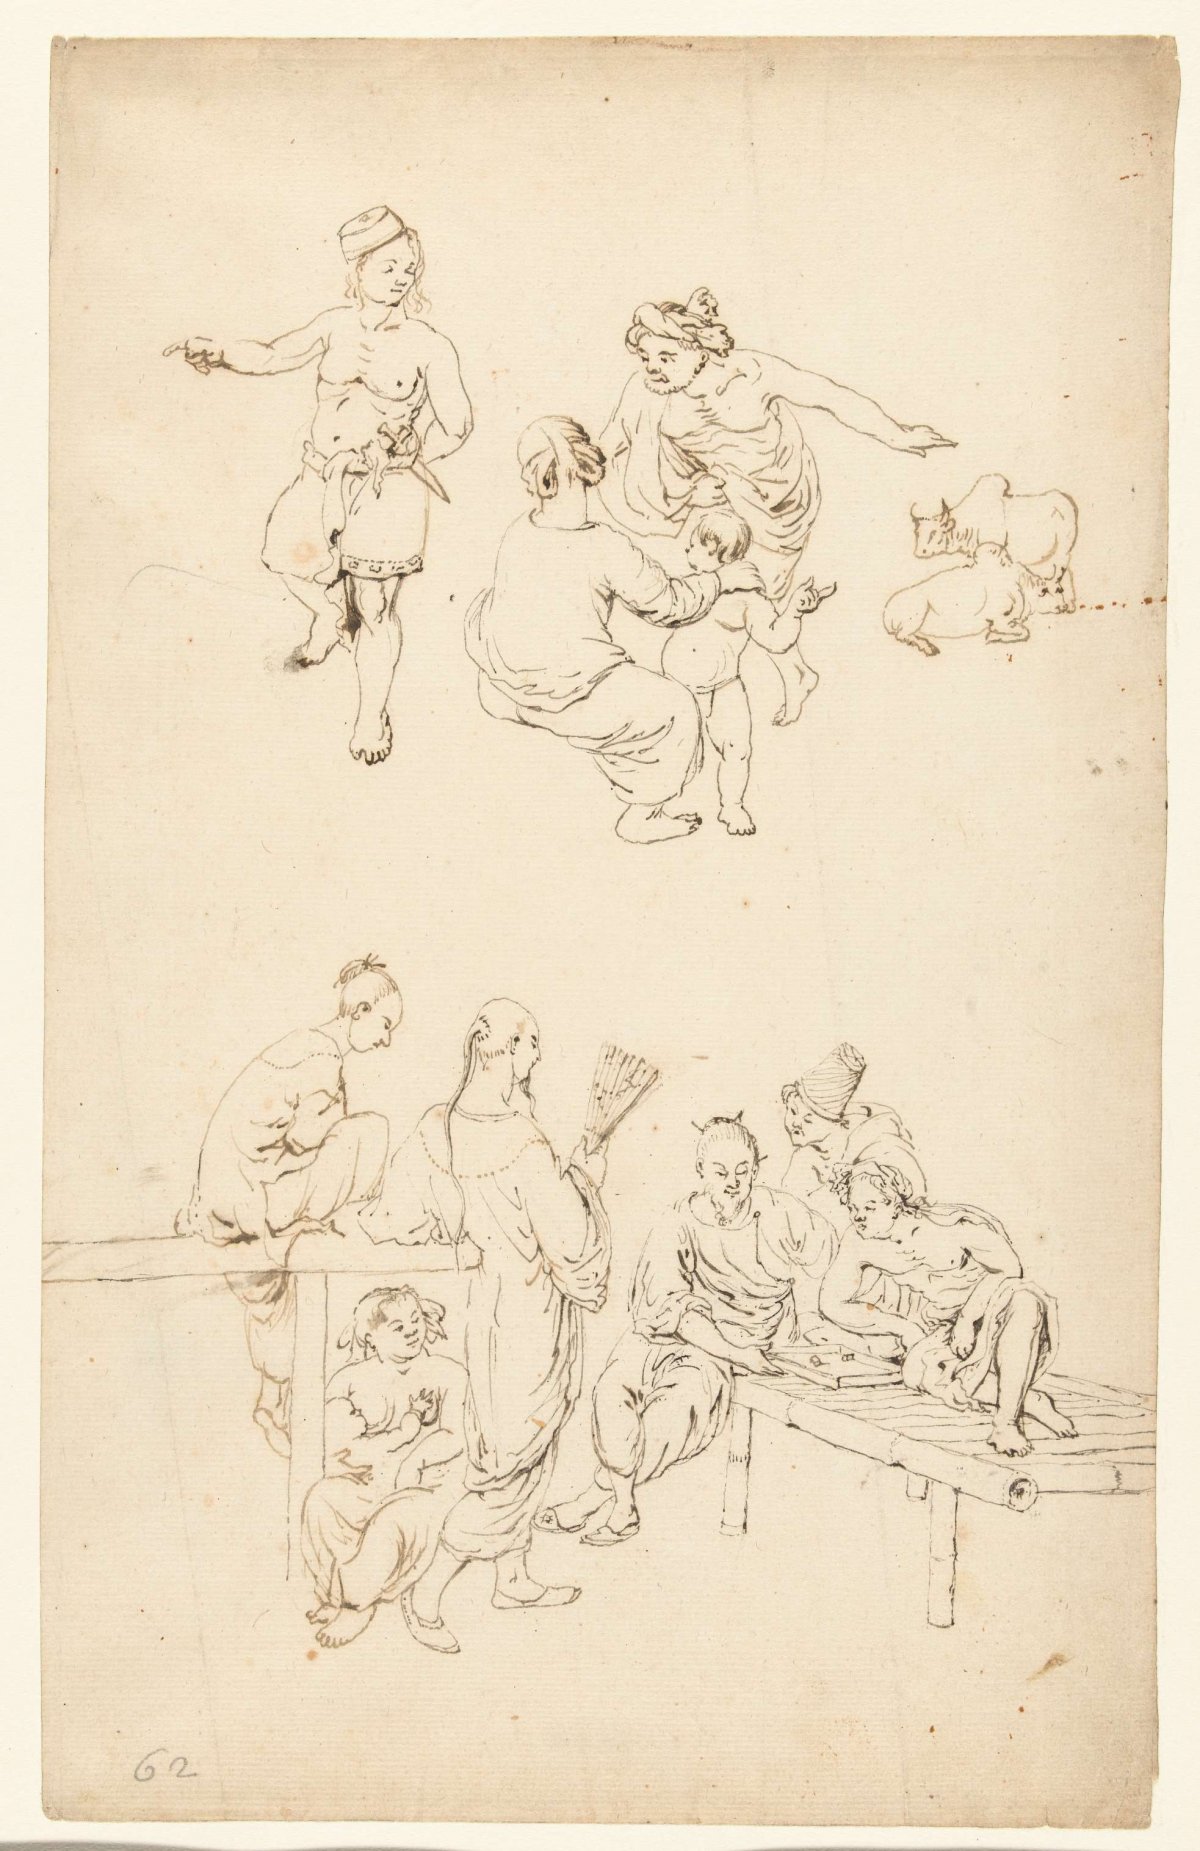 Two groups of figures, Wouter Schouten, c. 1660